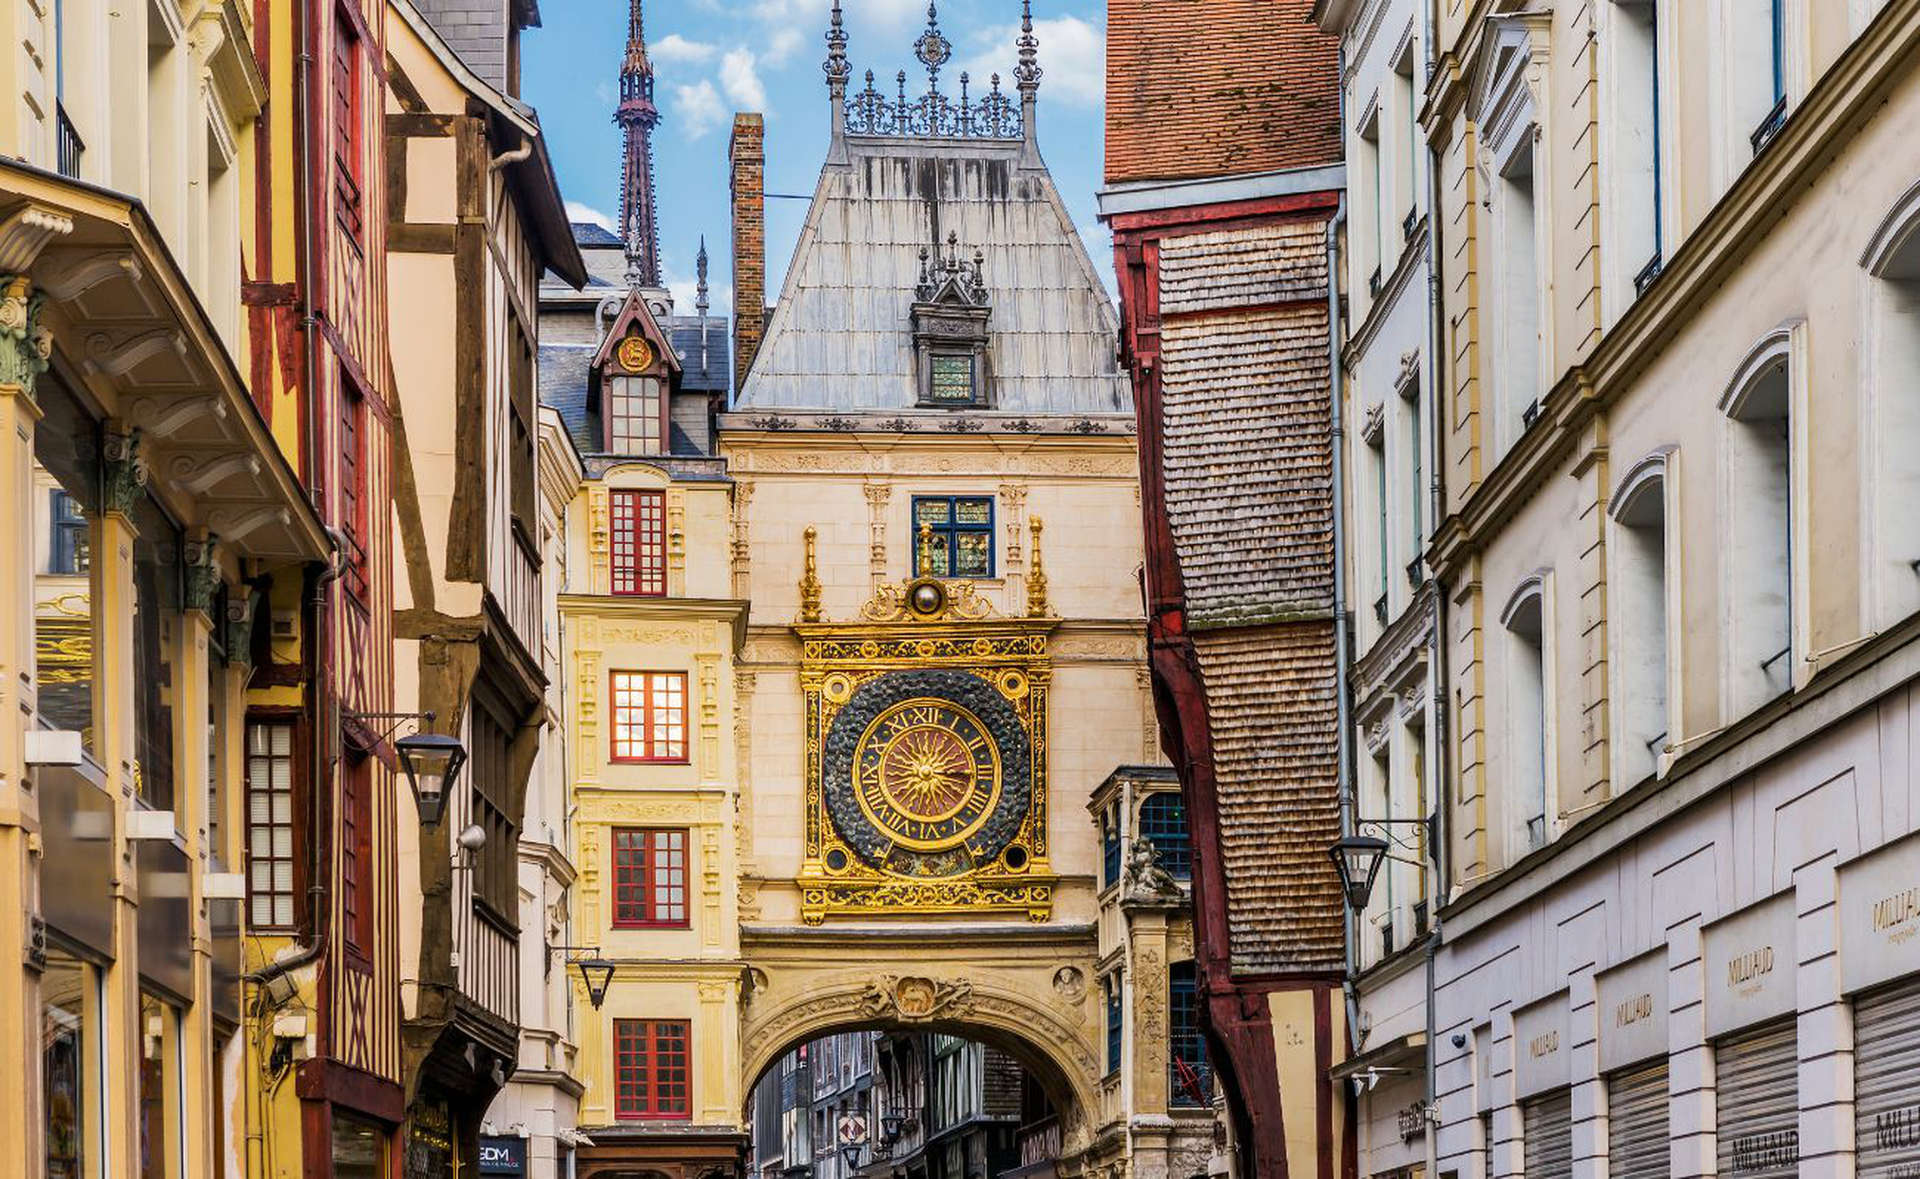 Le Gros Horloge, Rouen, France